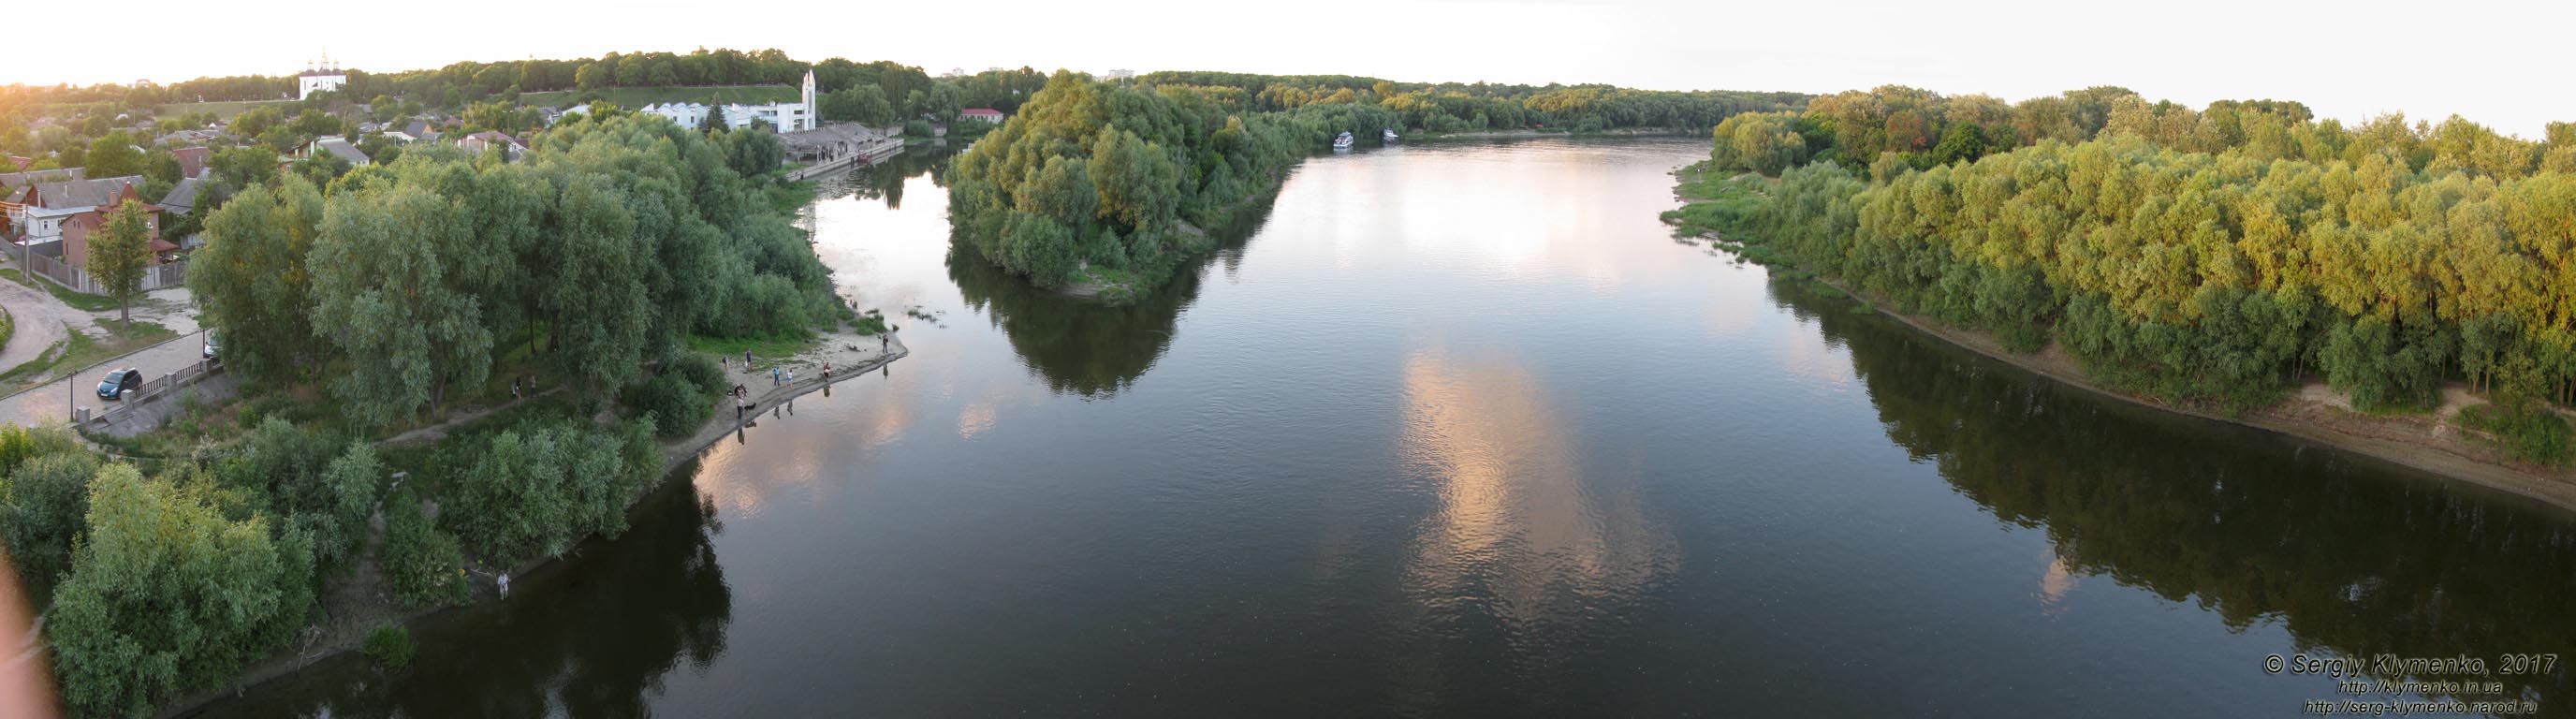 Чернигов. Фото. Вид на реку Десна ("против течения") с пешеходного моста. Панорама ~160°.